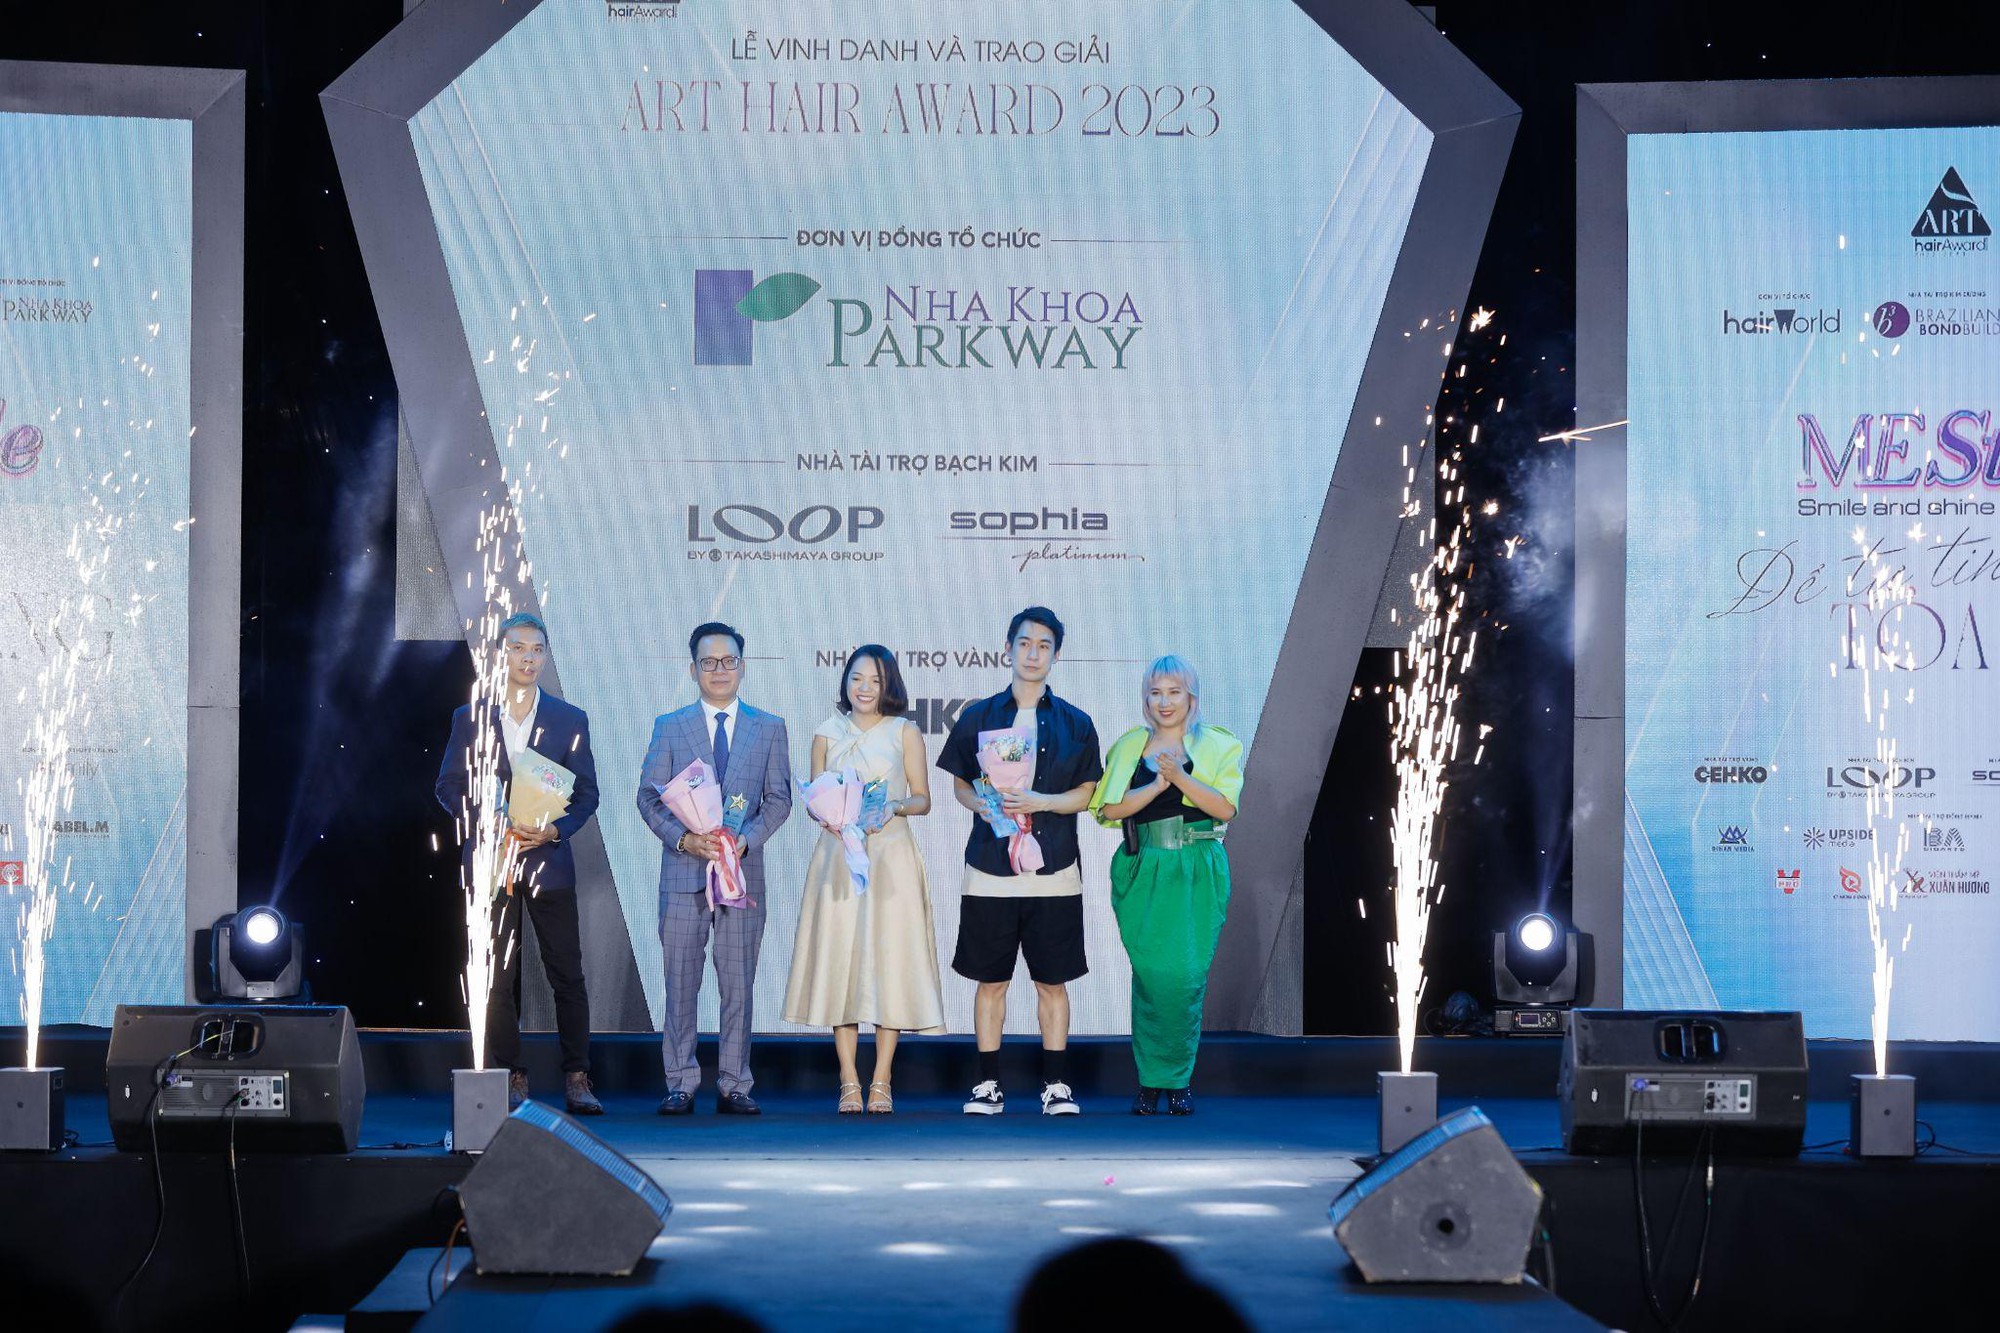 Art Hair Award Vietnam 2023: Sự hòa quyện giữa phong cách nổi bật và gương mặt khả ái - Ảnh 3.